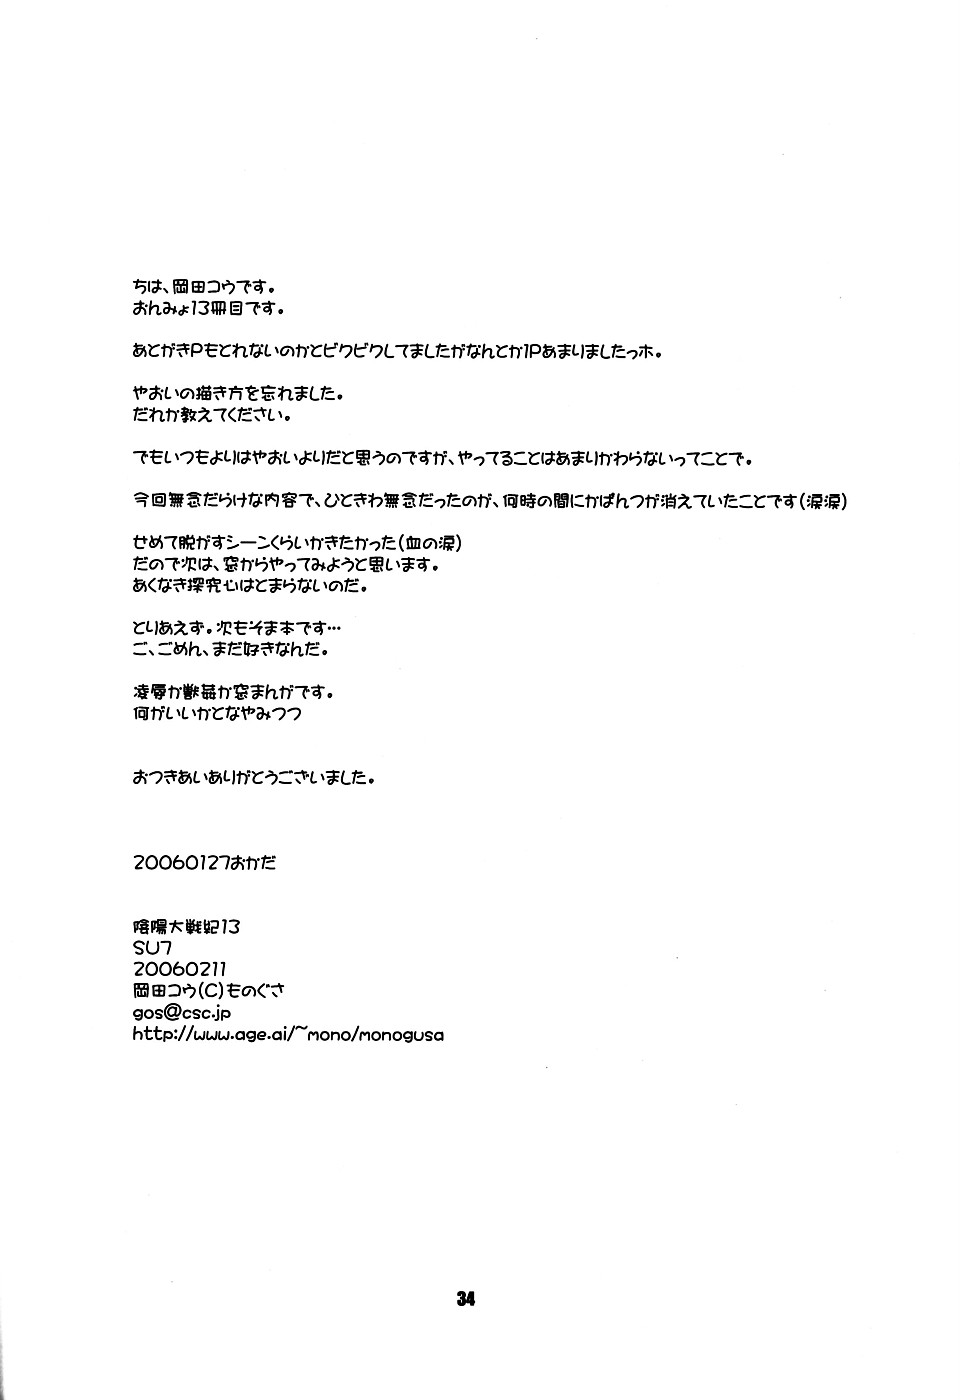 (Shikigami Koushin!!) [Monogusa (Okada Kou)] SU7 (Onmyou Taisenki) page 33 full